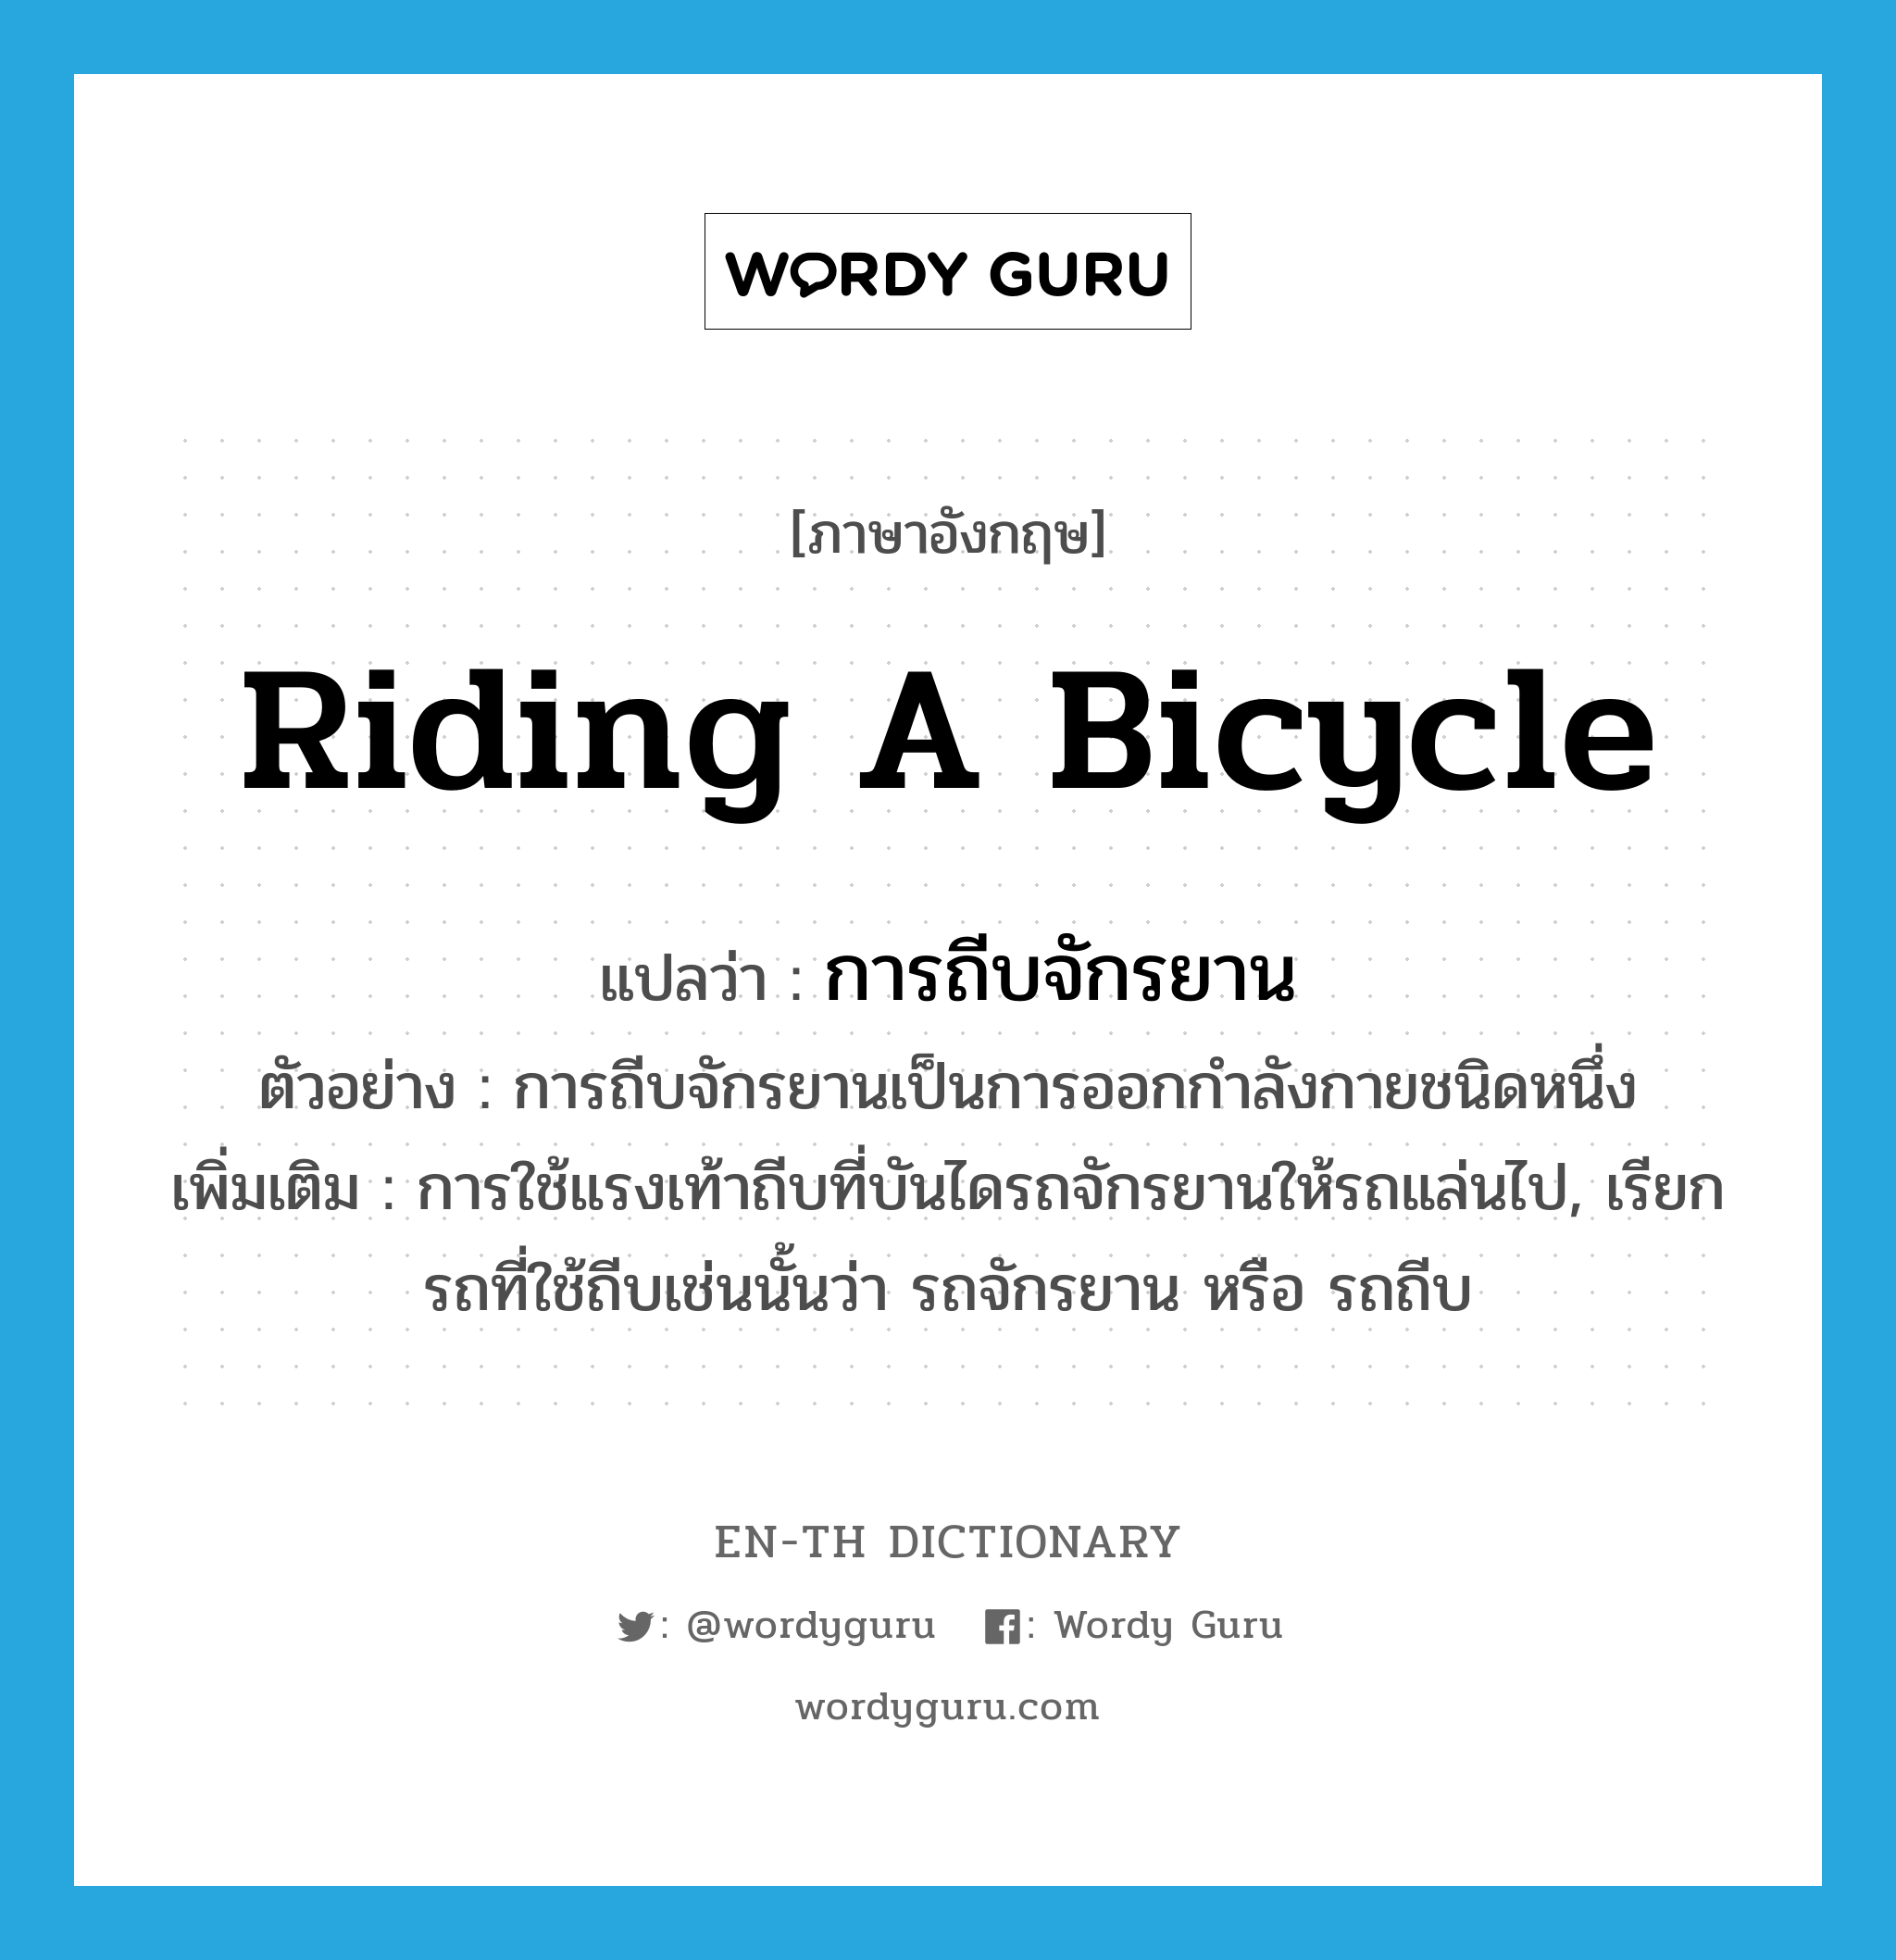 riding a bicycle แปลว่า?, คำศัพท์ภาษาอังกฤษ riding a bicycle แปลว่า การถีบจักรยาน ประเภท N ตัวอย่าง การถีบจักรยานเป็นการออกกำลังกายชนิดหนึ่ง เพิ่มเติม การใช้แรงเท้าถีบที่บันไดรถจักรยานให้รถแล่นไป, เรียกรถที่ใช้ถีบเช่นนั้นว่า รถจักรยาน หรือ รถถีบ หมวด N